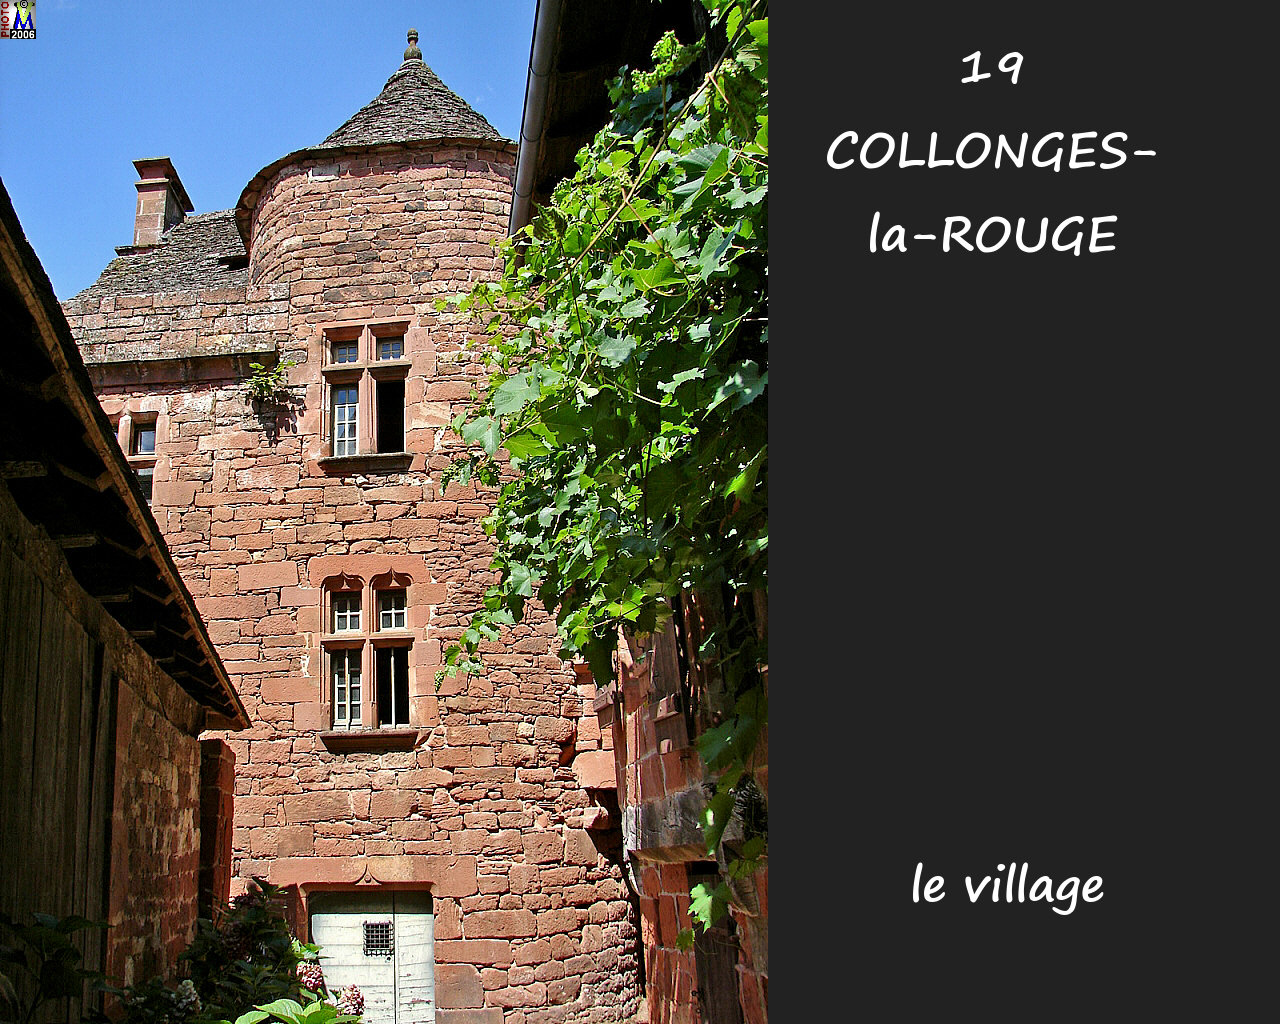 19COLLONGES-ROUGE_village_192.jpg